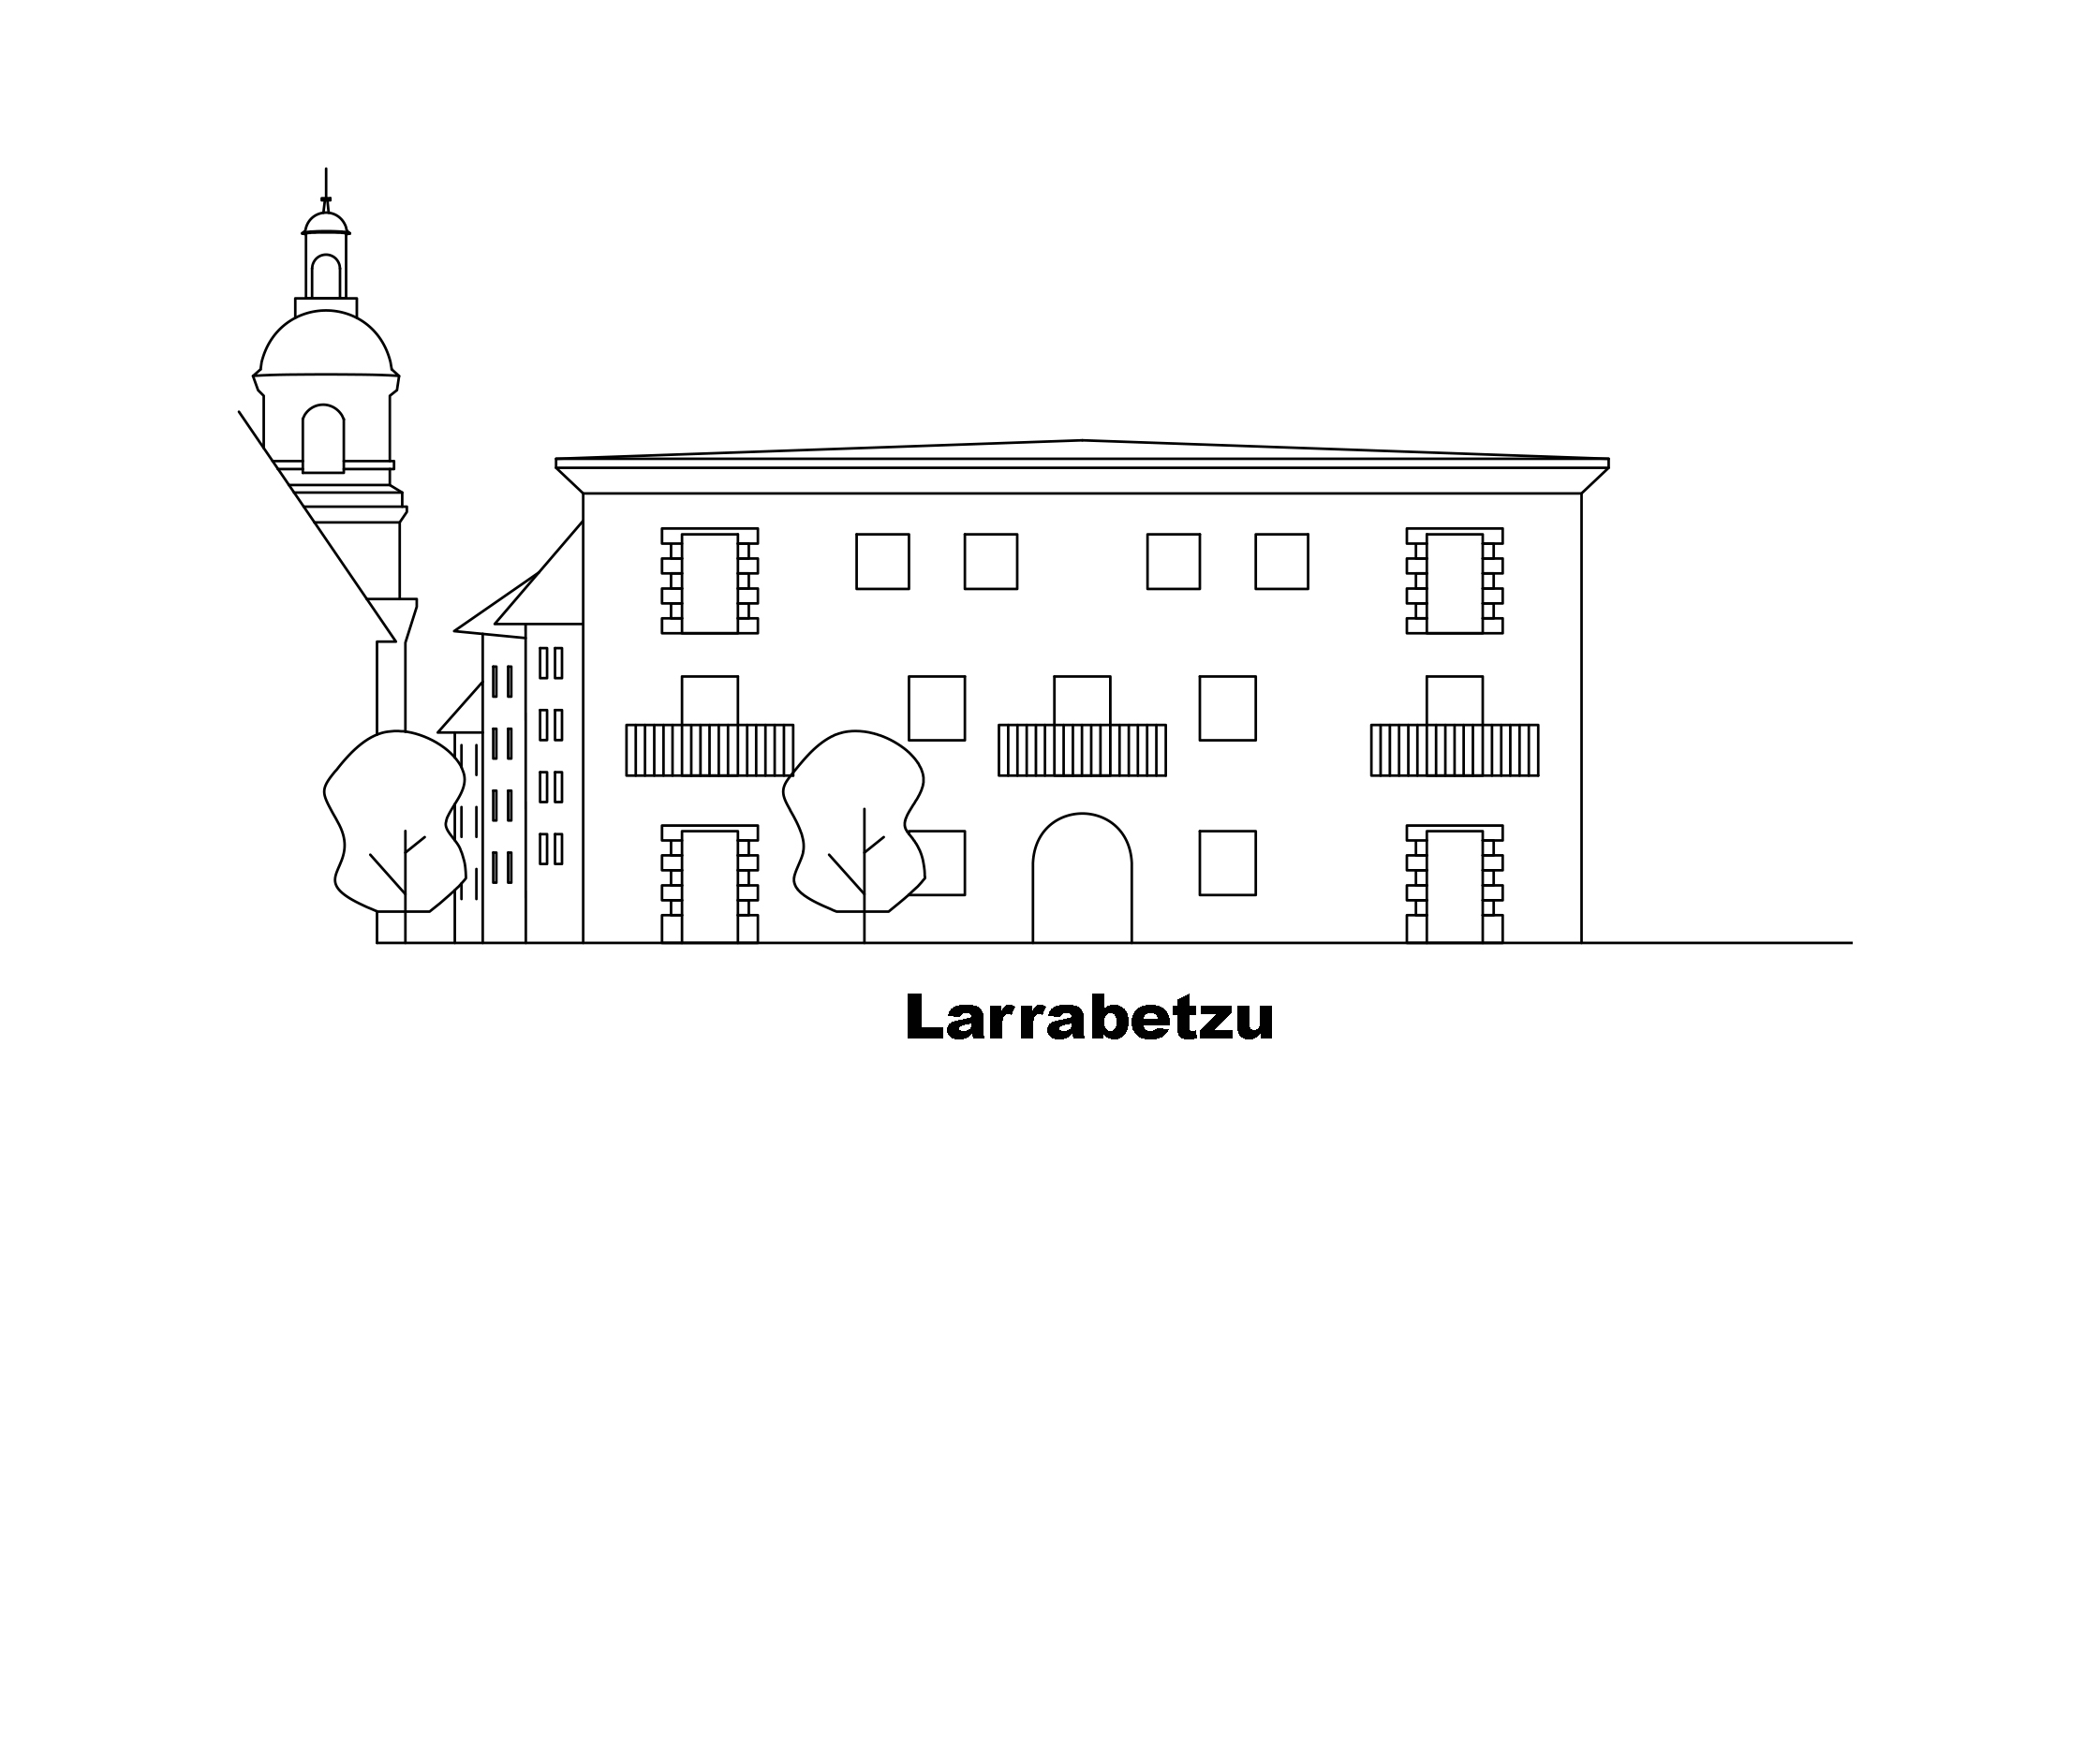 Larrabetzu